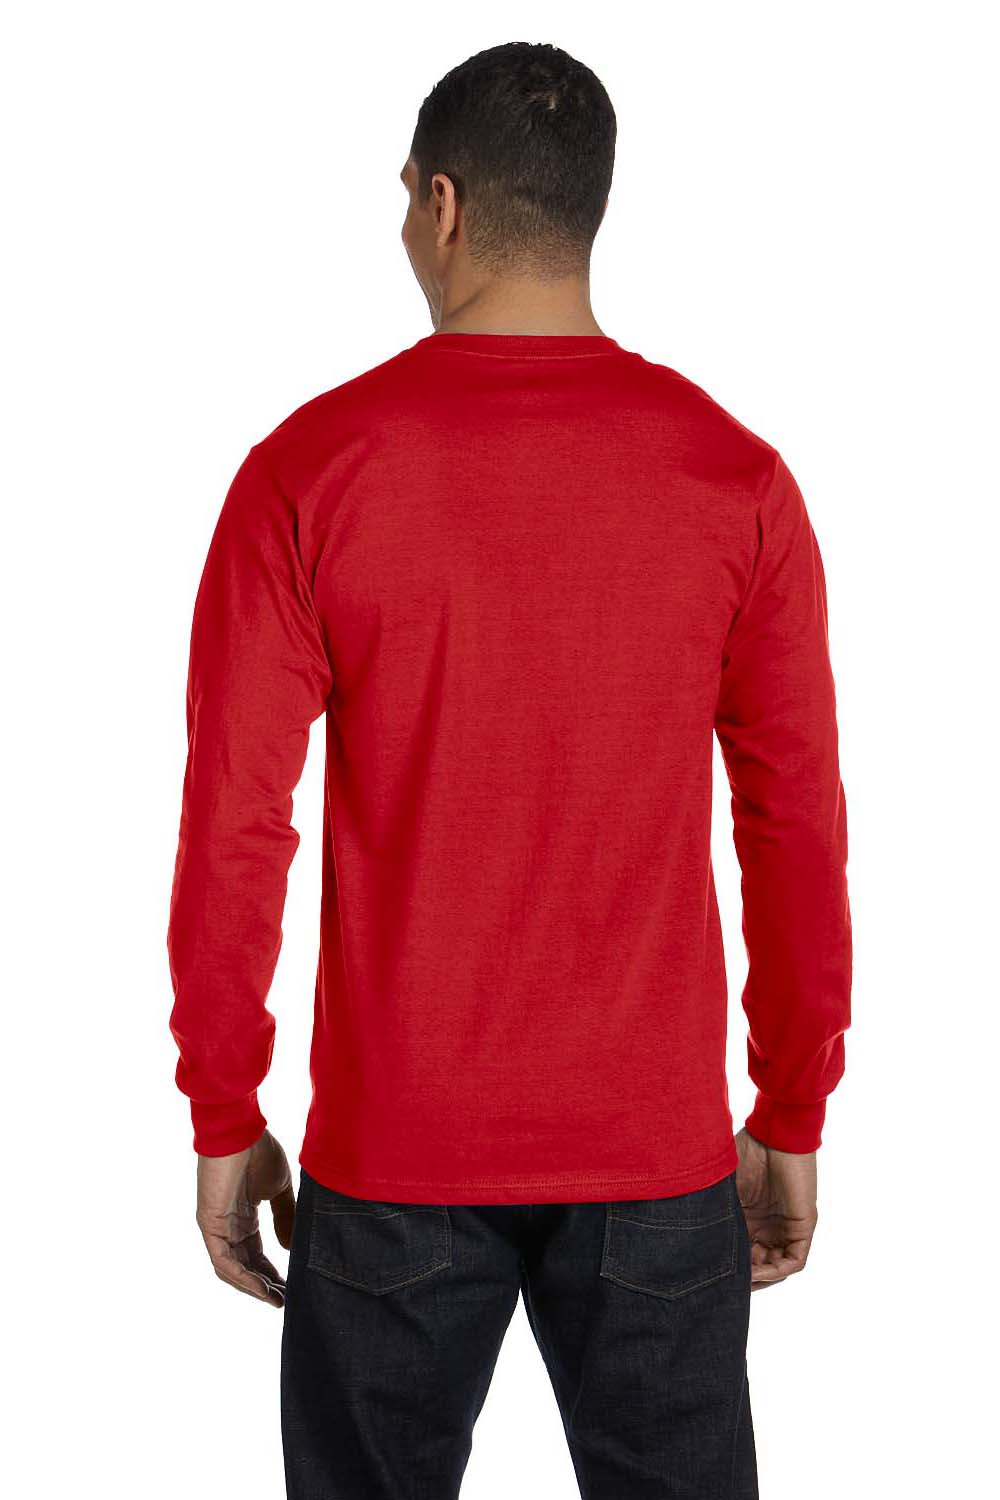 Gildan G840 Mens DryBlend Moisture Wicking Long Sleeve Crewneck T-Shirt Red Back